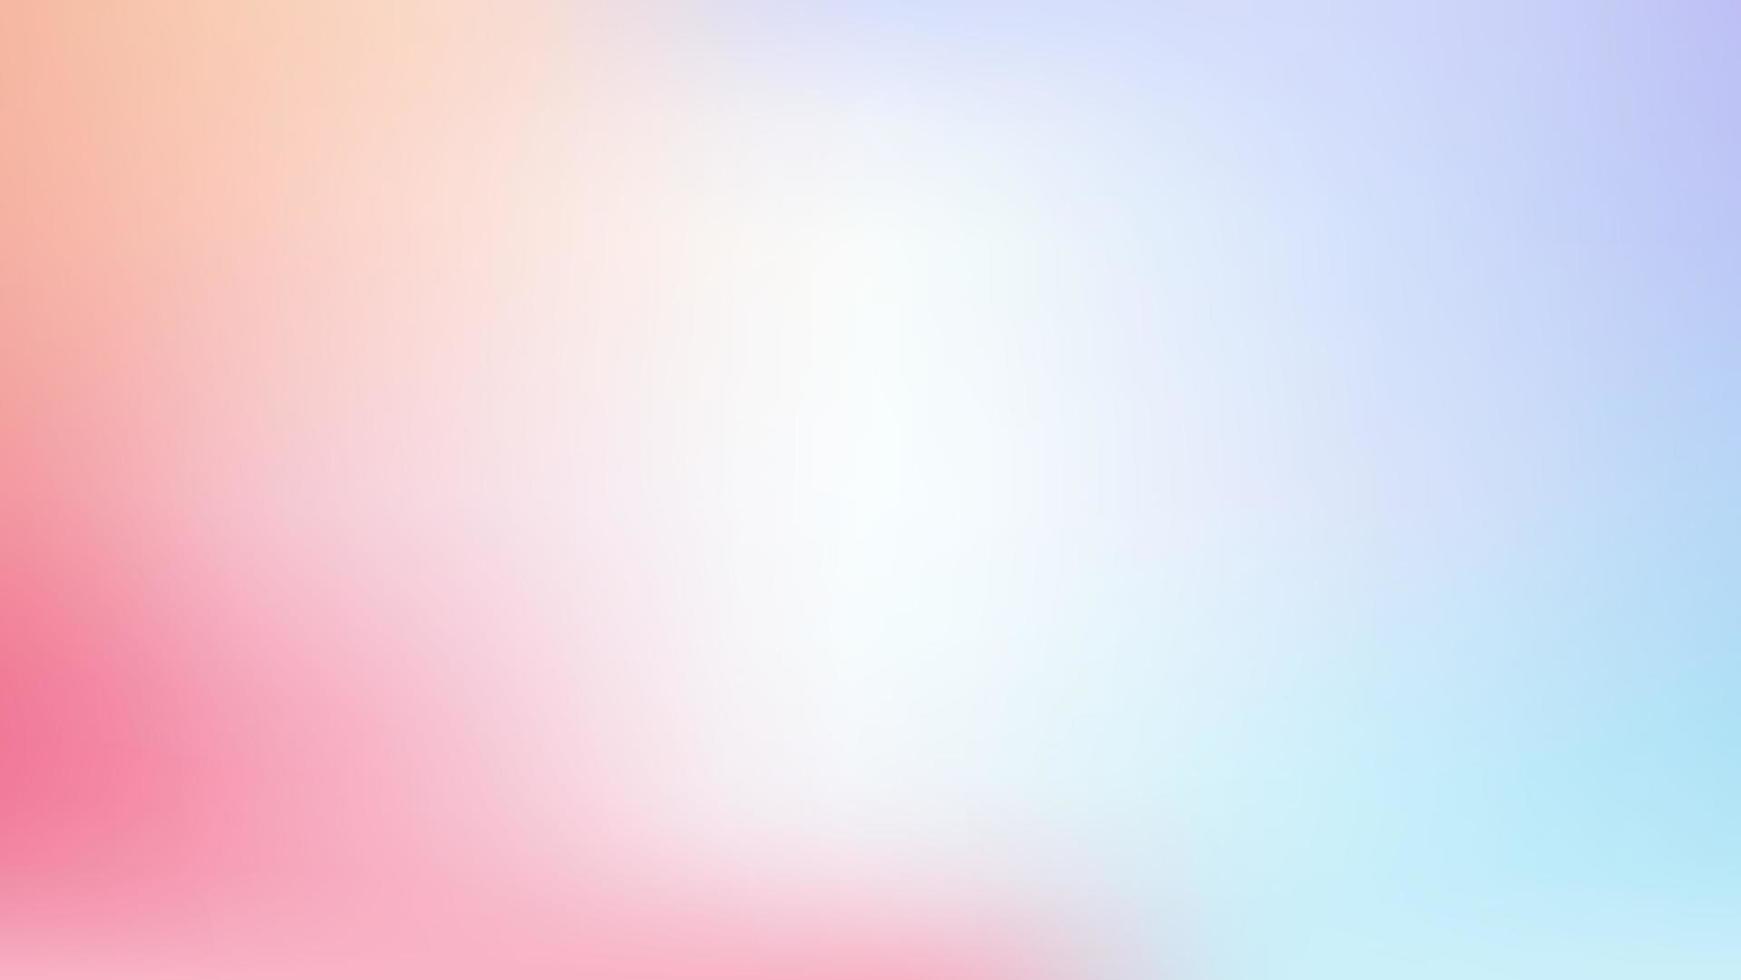 abstracte pastelkleurige achtergrond met lege ruimte vector